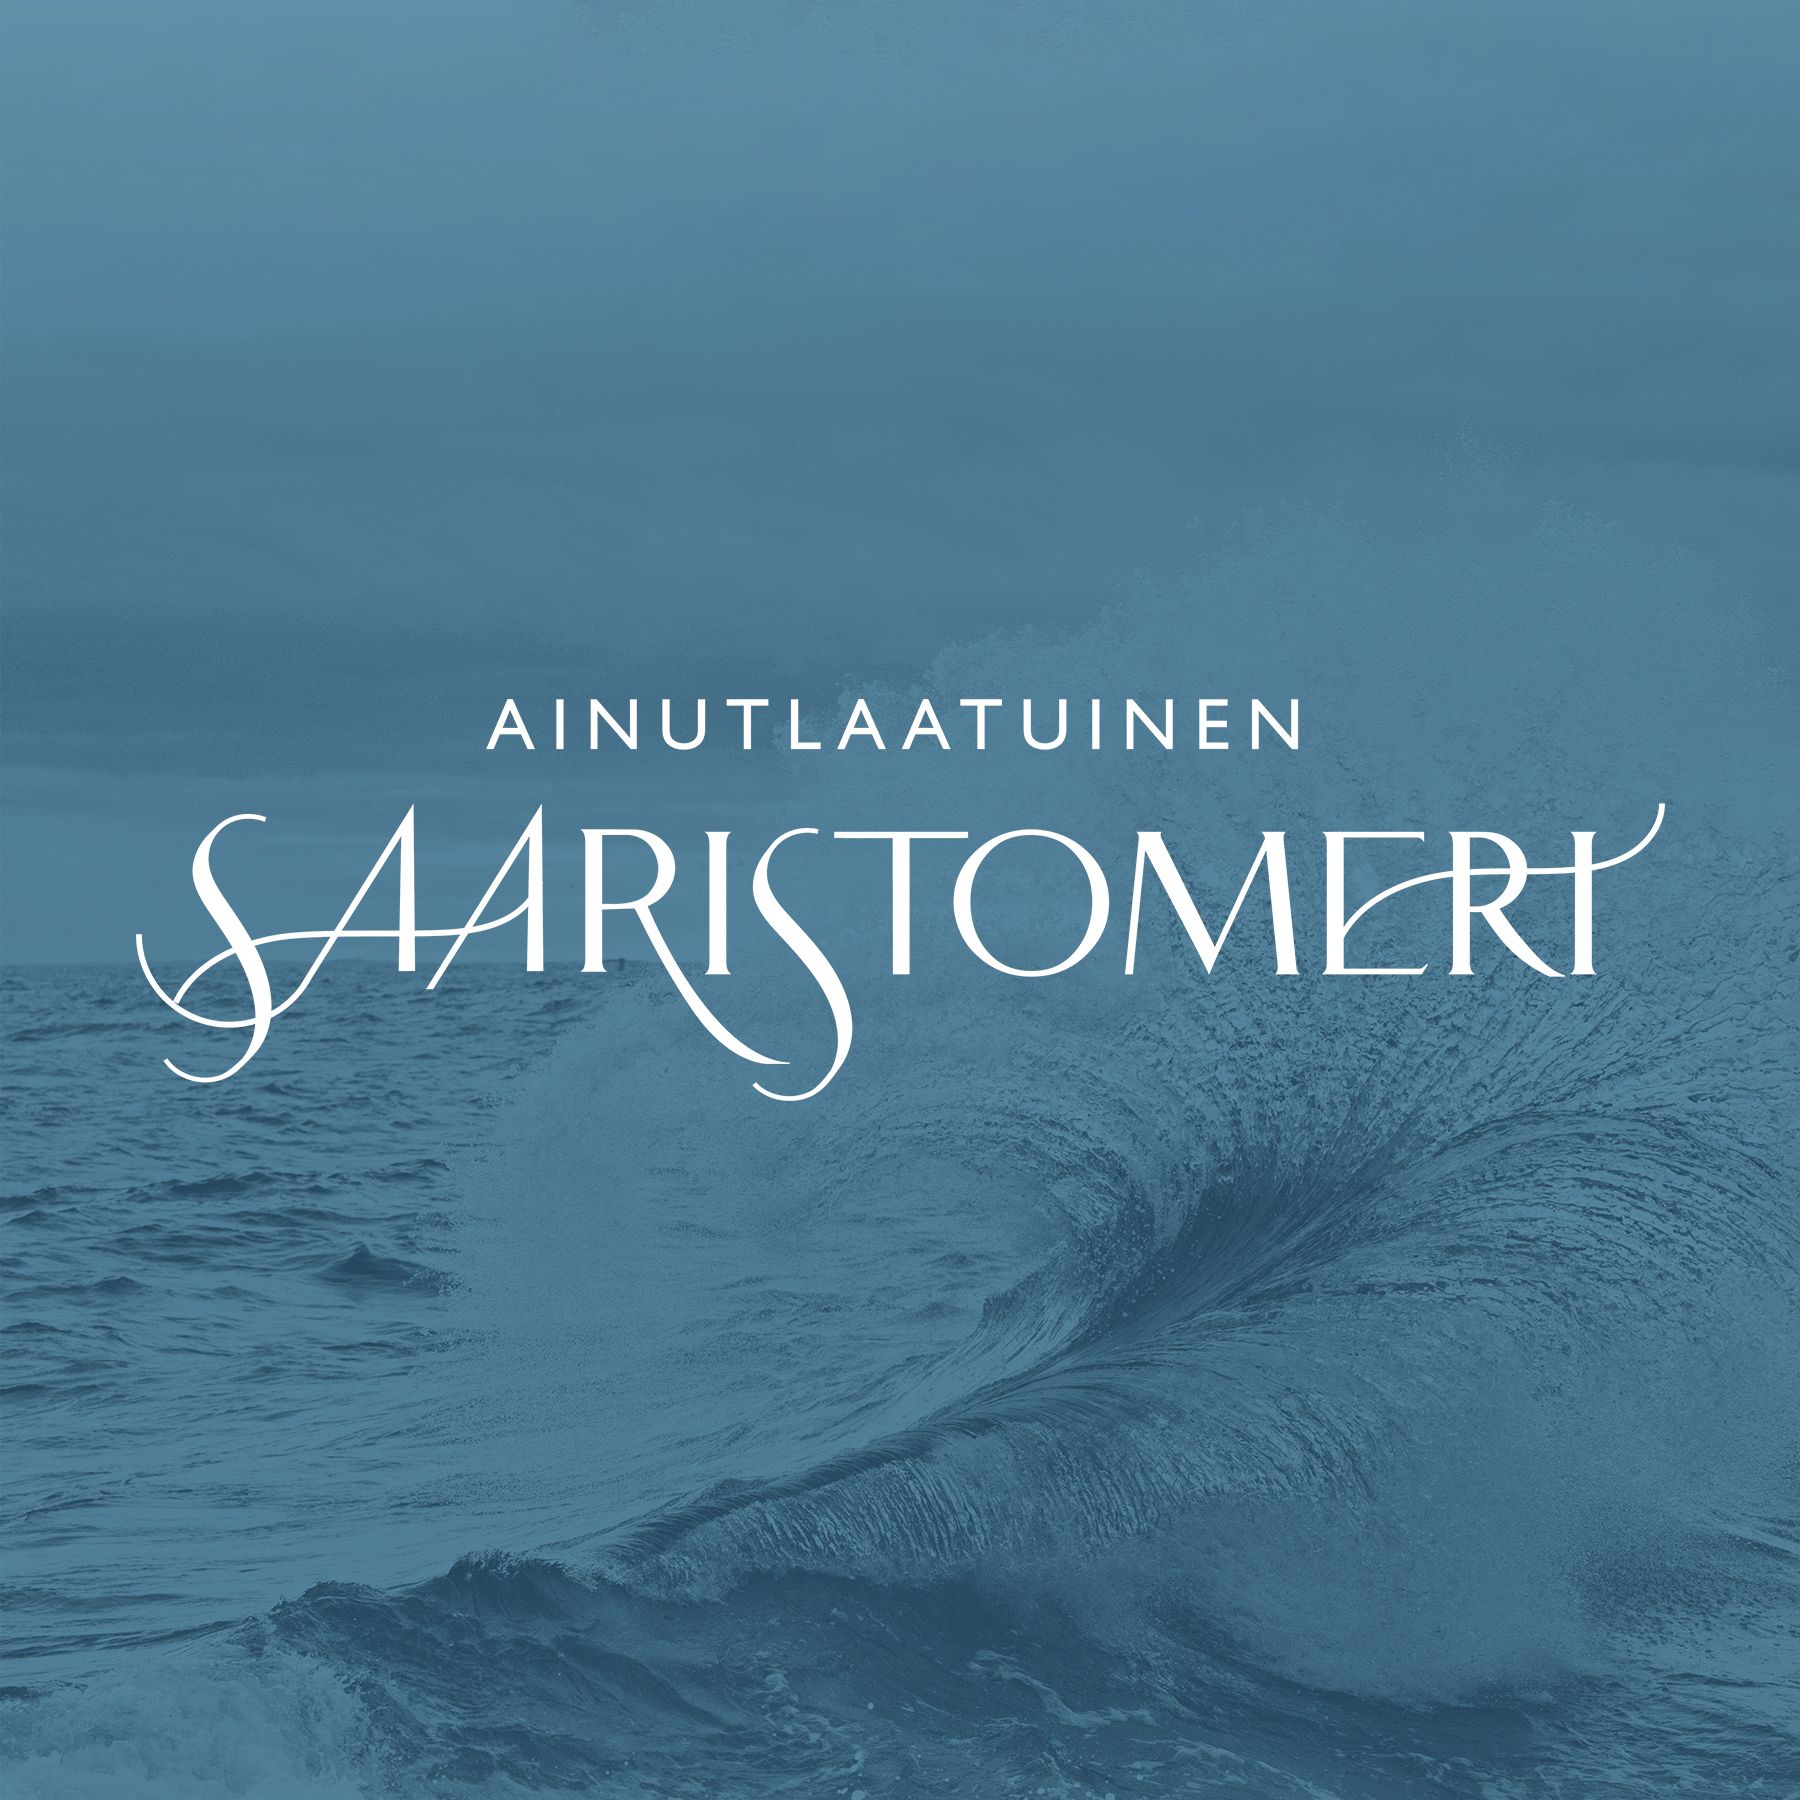 Centrum Balticum -säätiö käynnistää viisivuotisen kampanjan Saaristomeren suojelemiseksi. Operaatio Saaristomeri on kampanja, jonka tavoitteena on saada aikaan konkreettisia toimenpiteitä Saaristomeren pelastamiseksi.